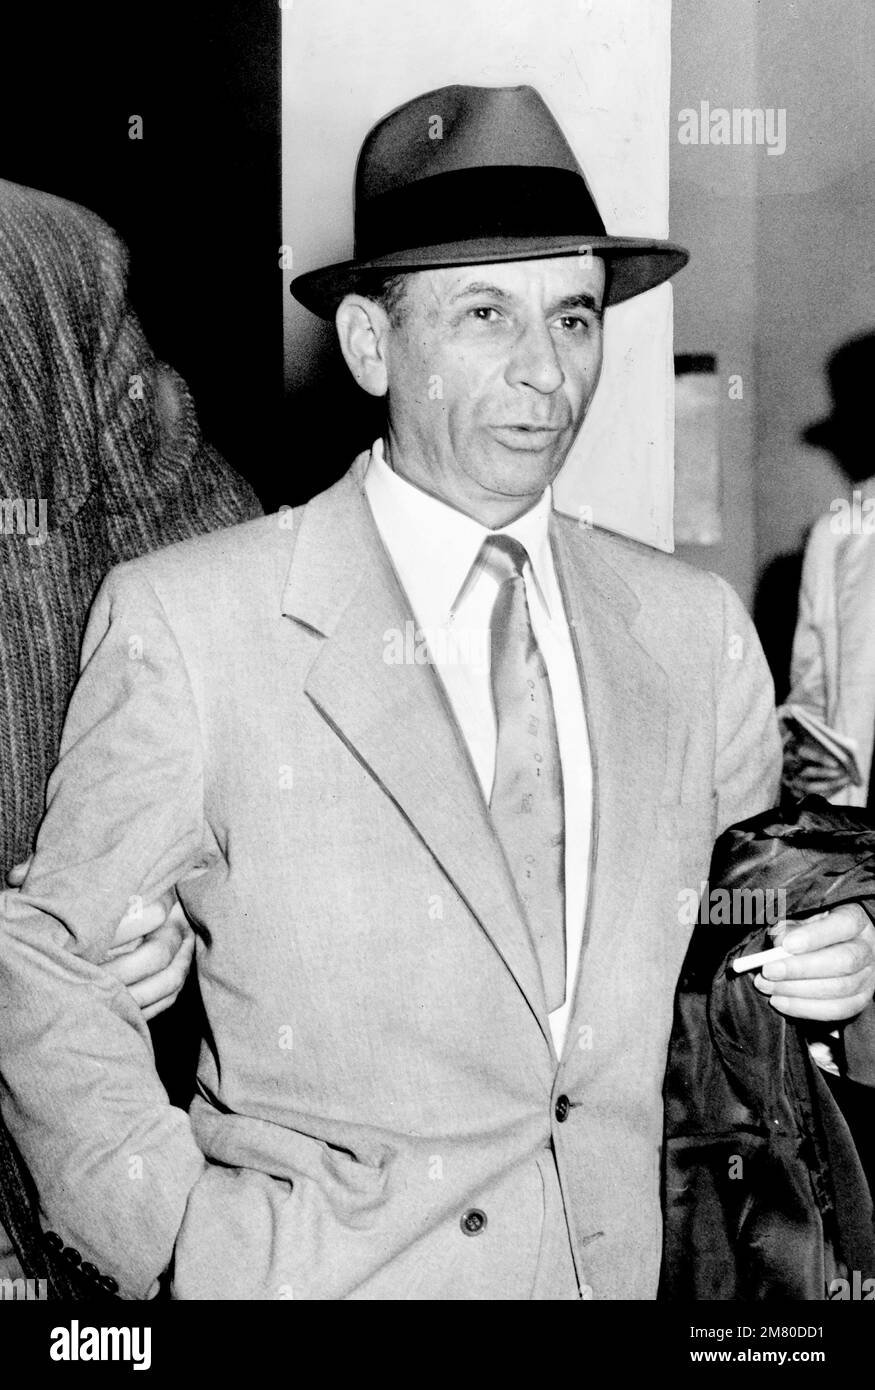 Meyer Lansky. Foto der amerikanischen Figur des organisierten Verbrechens mit dem Spitznamen "Mobs Accountaint", Meyer Lansky (geb. Maier Suchowljansky, 1902-1983) von Orlando Fernandez, 1958. Stockfoto